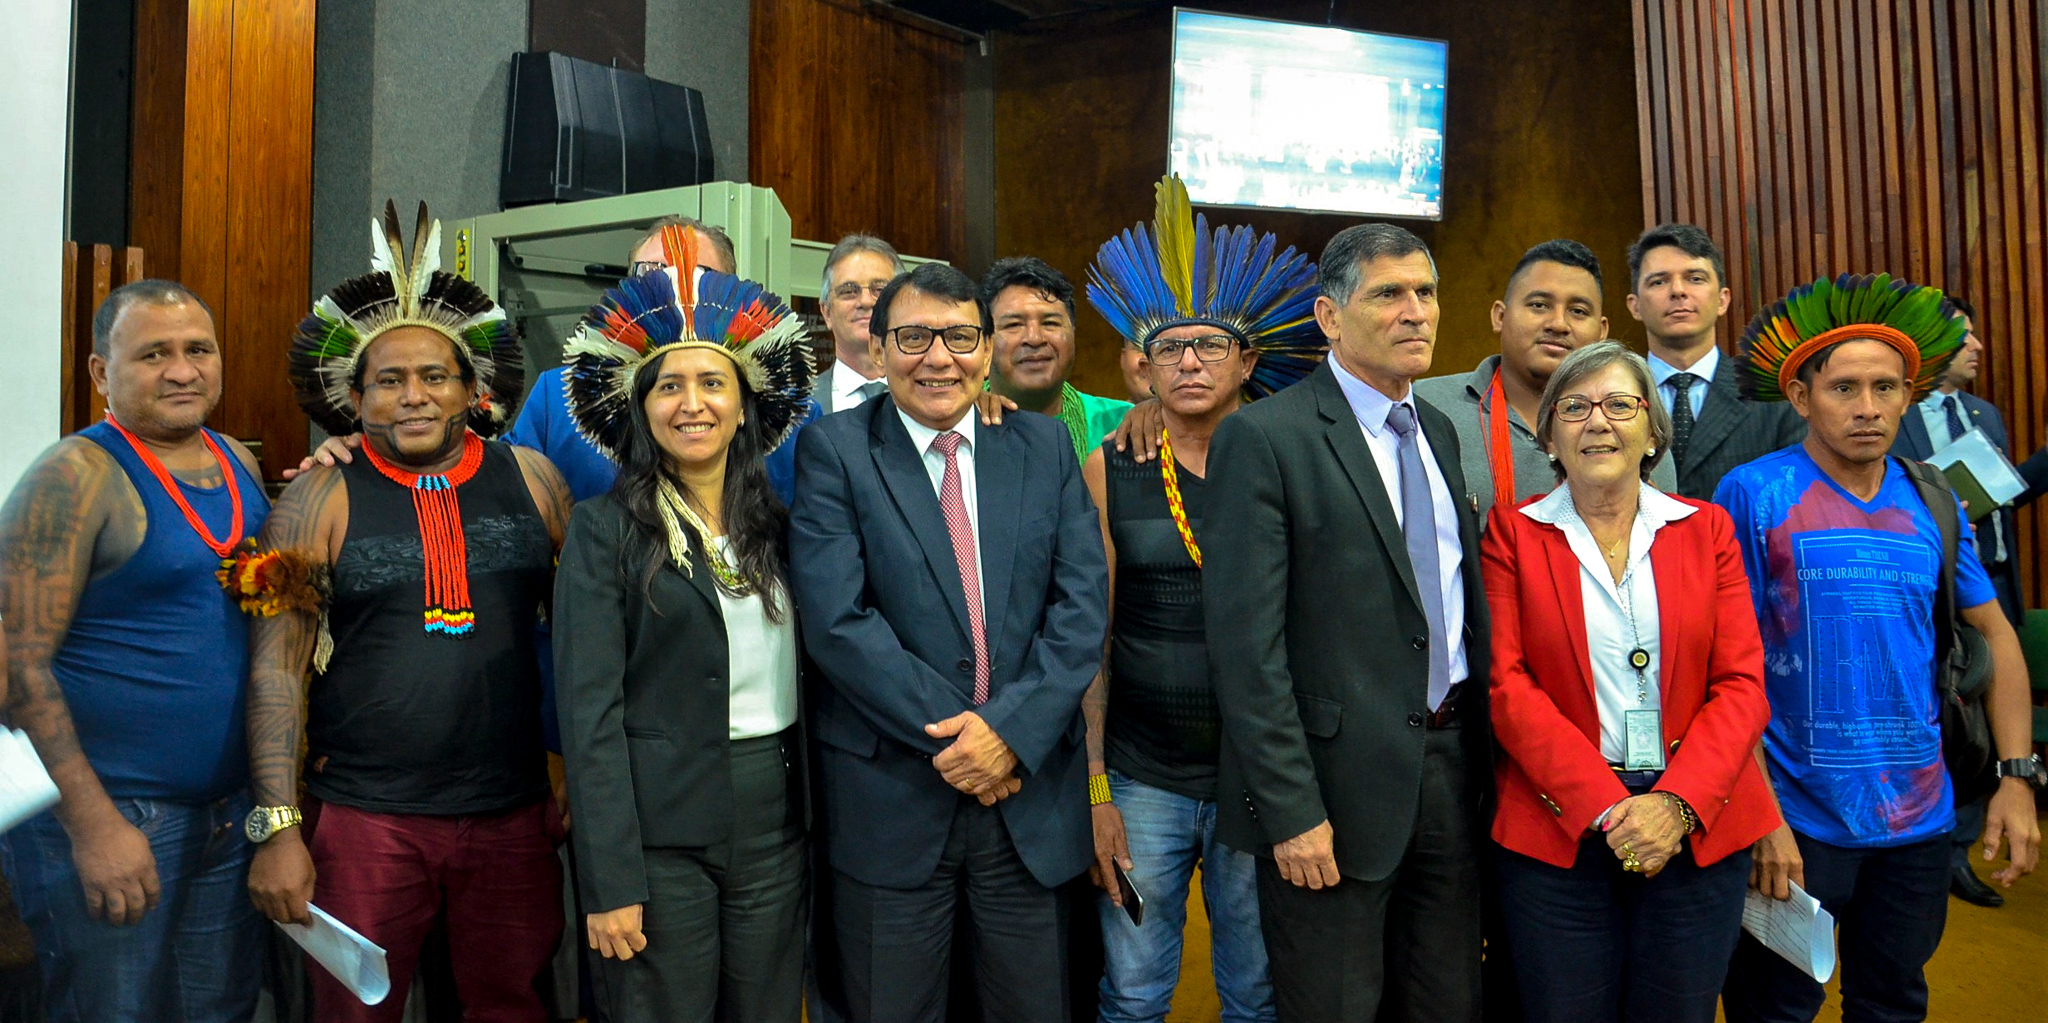 Franklimberg de Freitas  Carlos Cruz  liderancas do Xingu